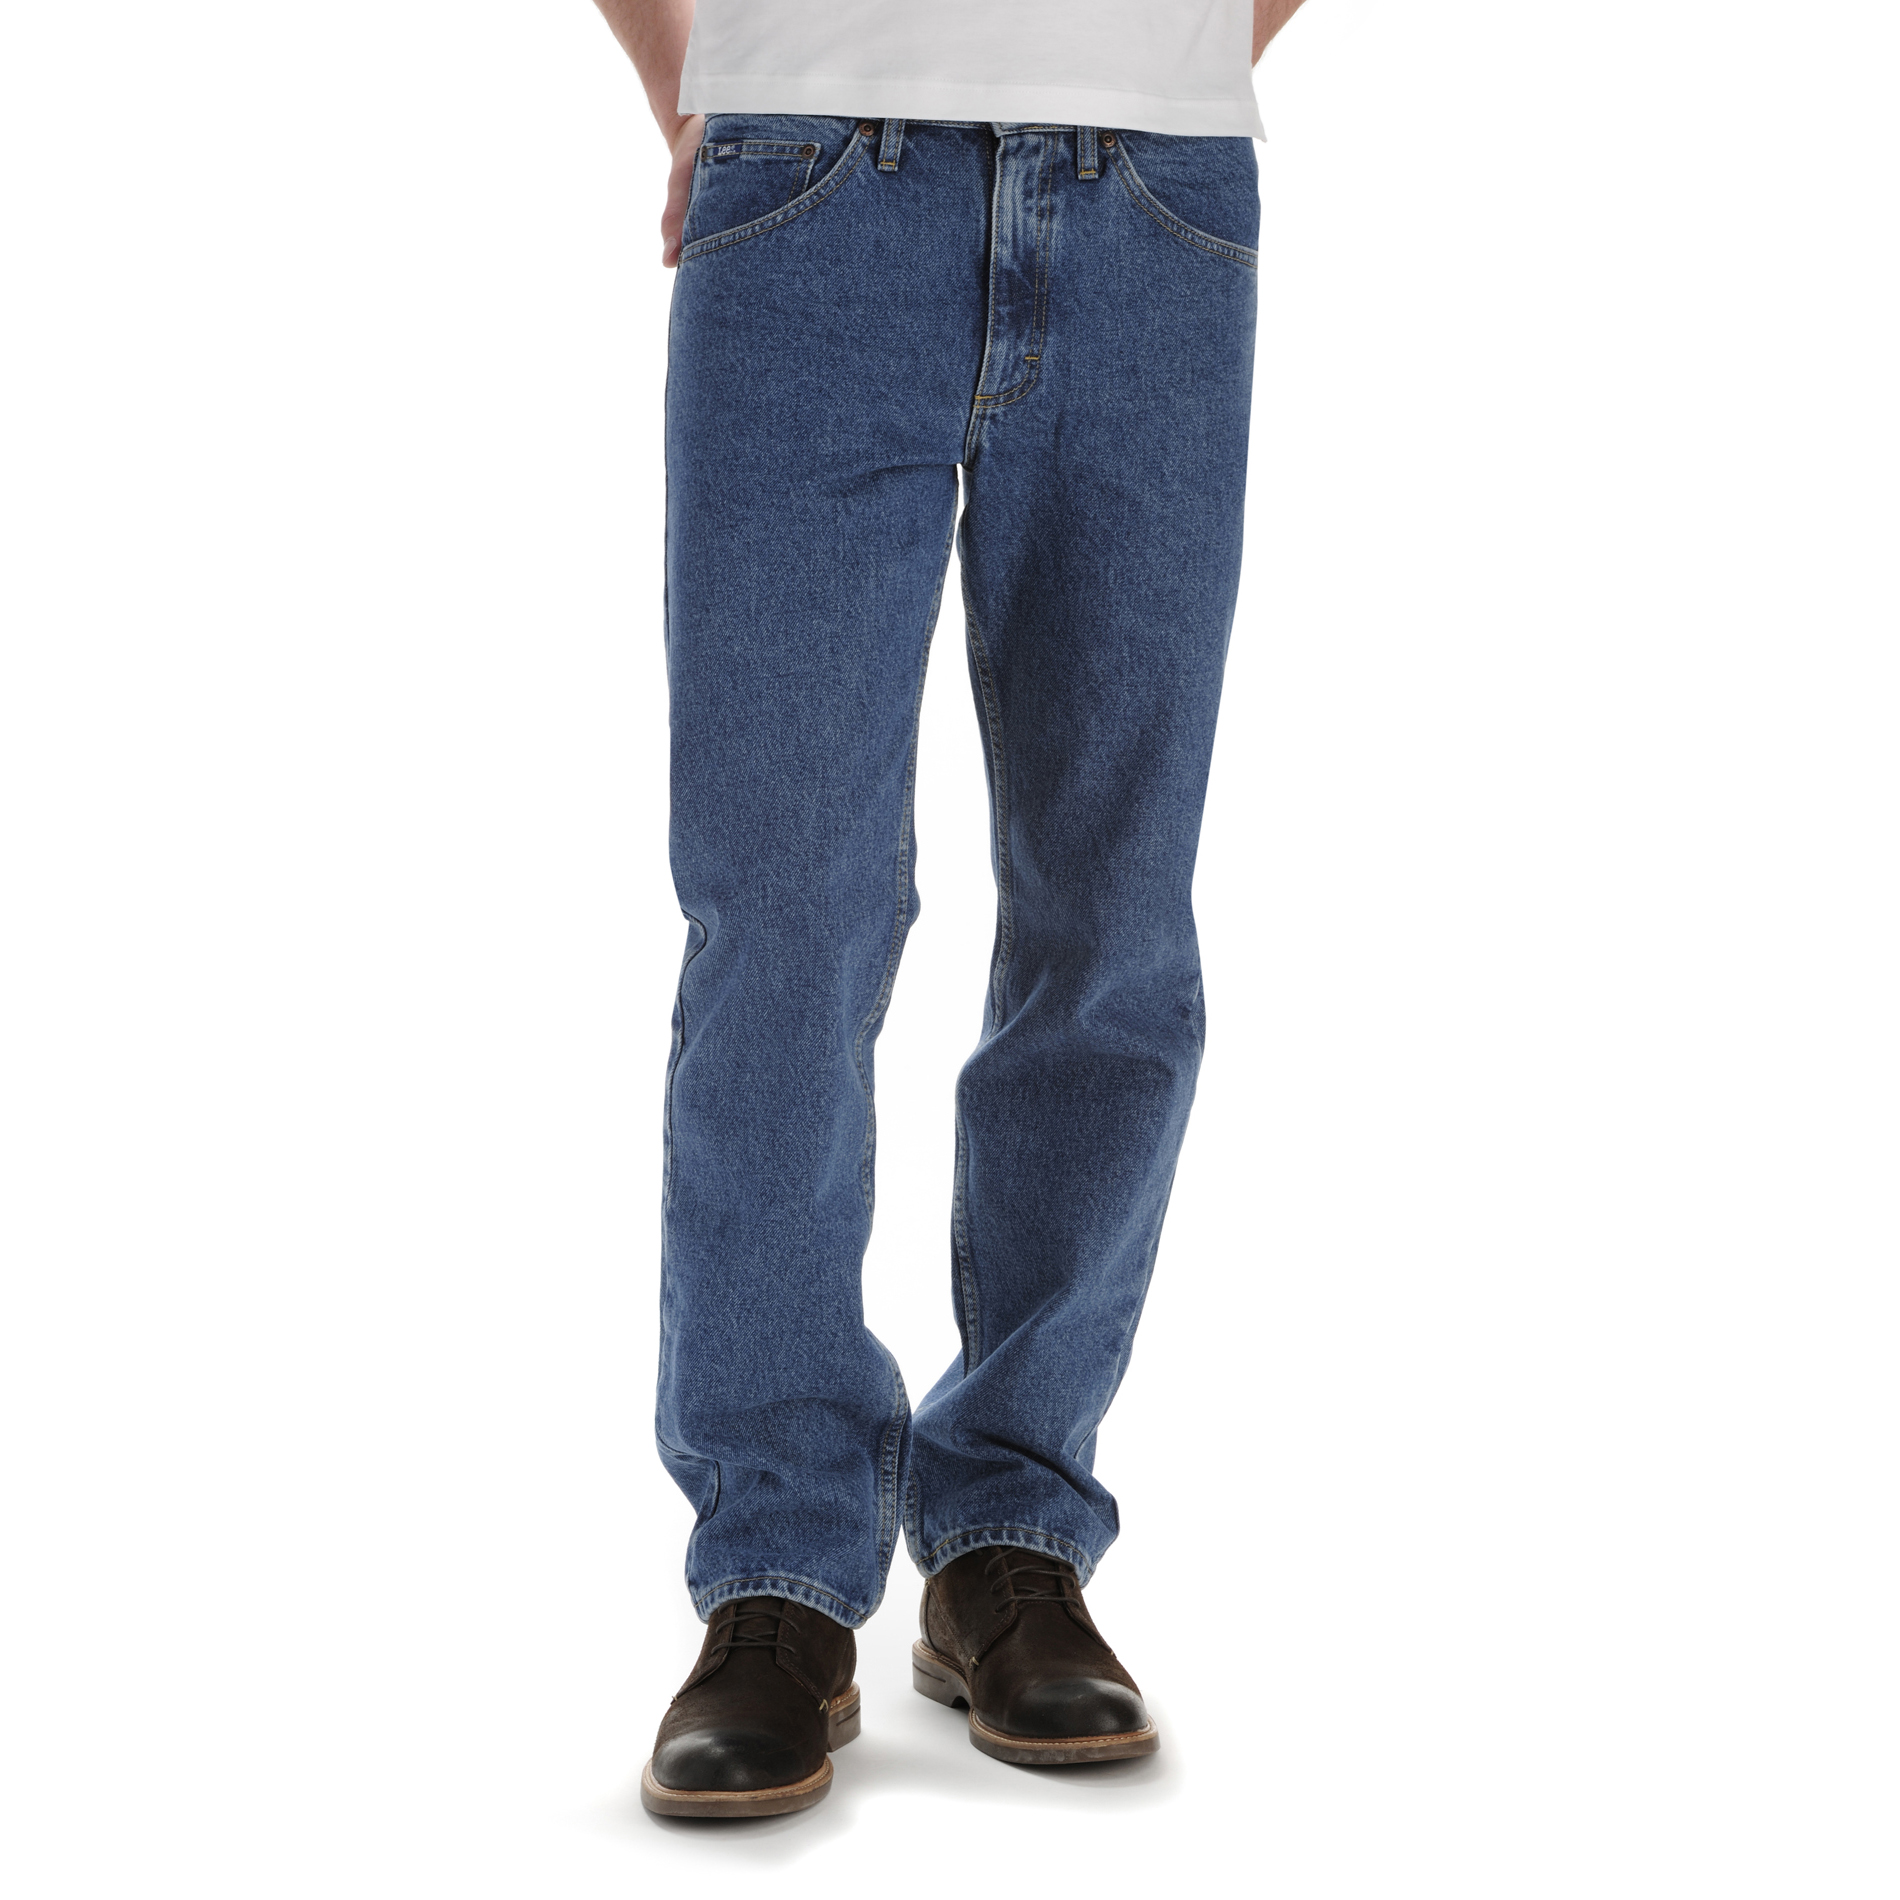 teleurstellen Verdorie Denemarken LEE Men's Regular Fit Core Jeans